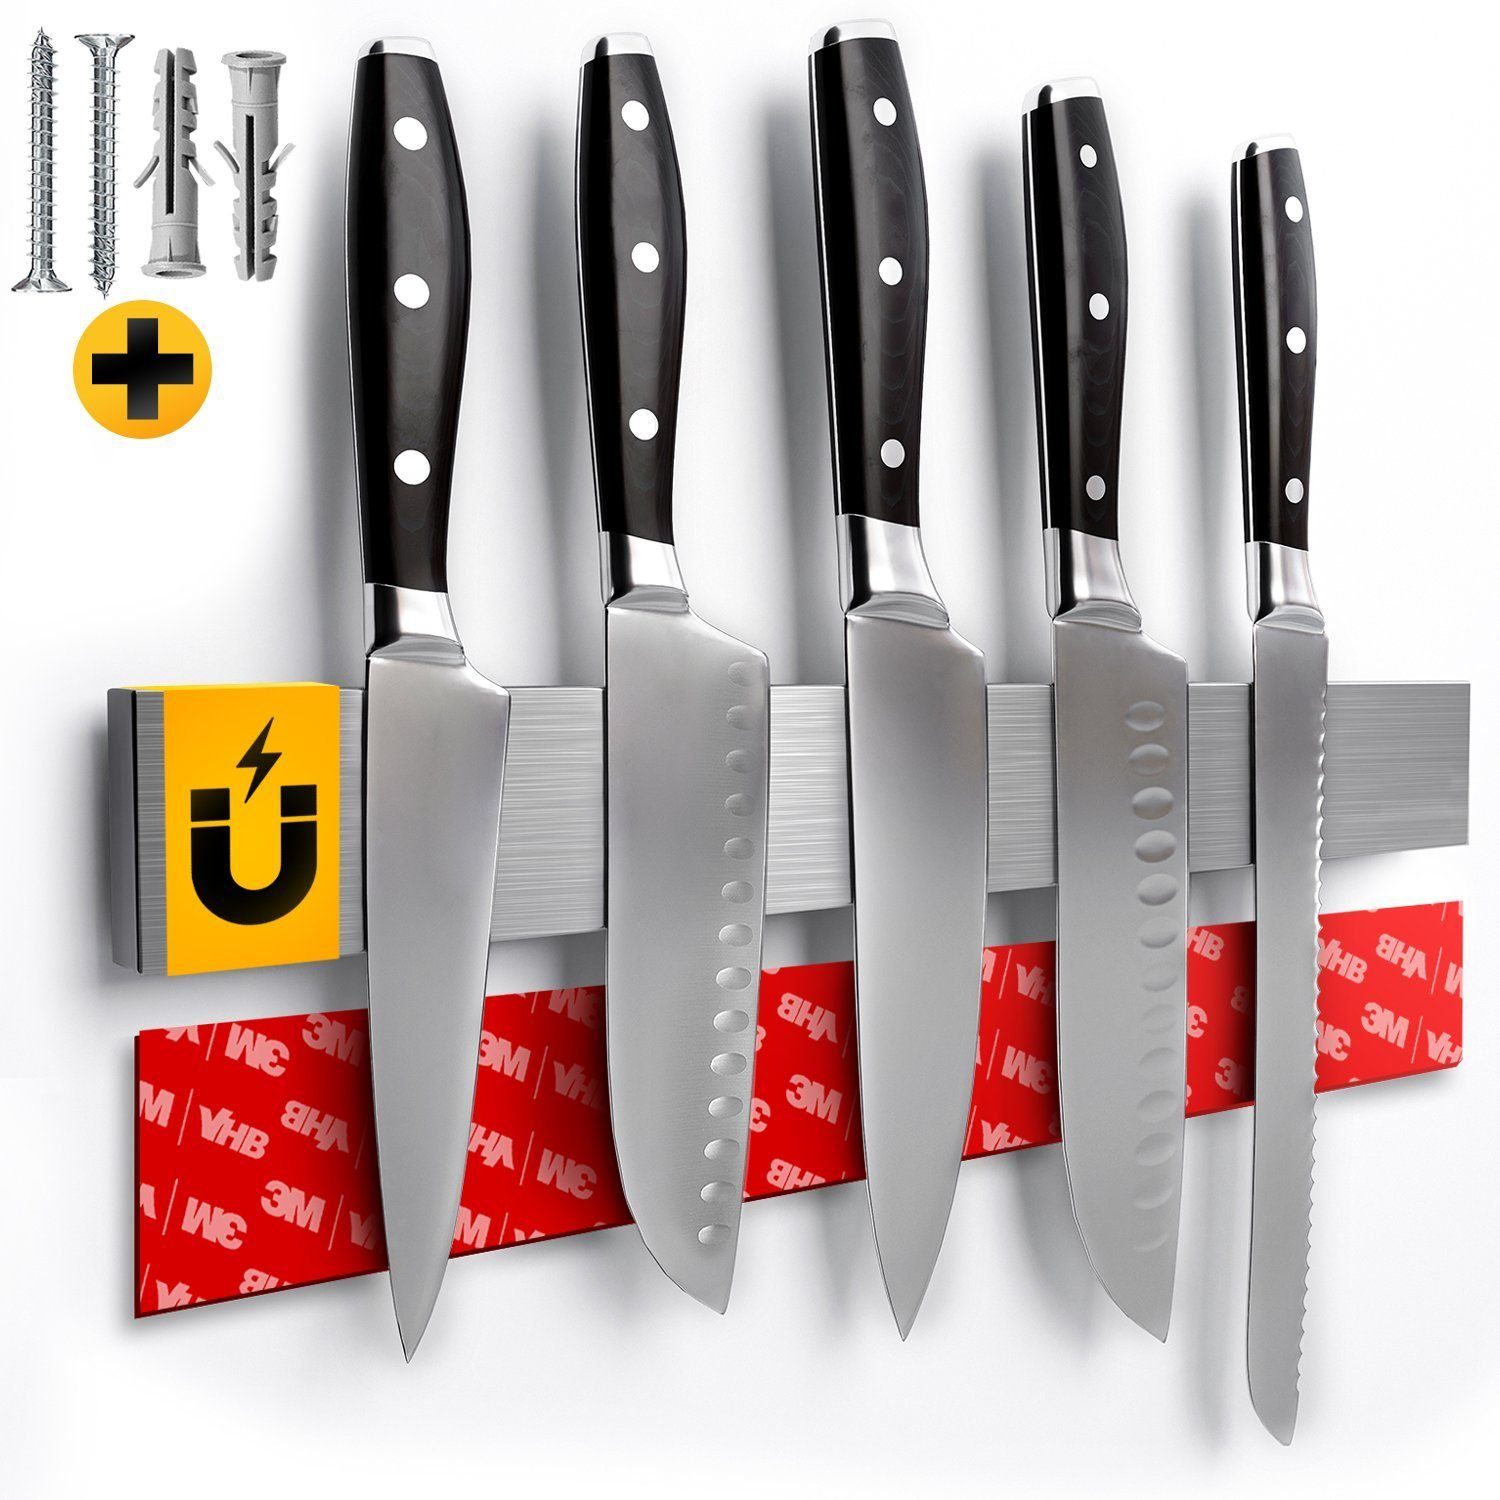 Sidorenko Wand-Magnet Messer-Leiste Magnetleiste Messer 40cm - selbstklebend mit 3M VHB Klebeband - Messerleiste Edelstahl für Küchenutensilien oder Werkzeugen - Messerhalter magnetisch Wandmontage für Küche ohne Bohren (1tlg)